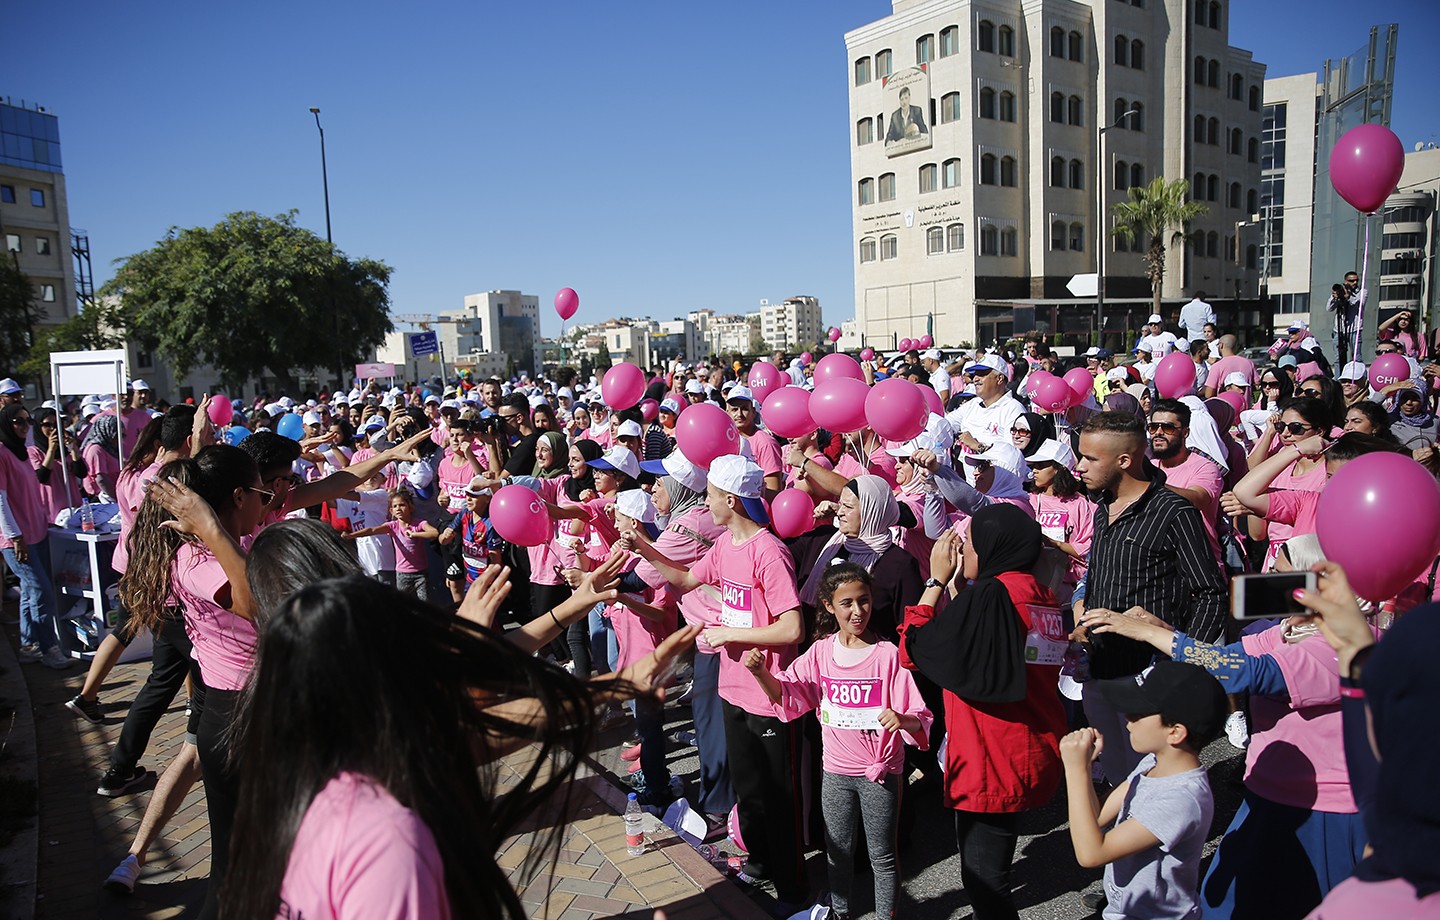 سباق اليوم الوردي النسائي رام الله ‫(38470145)‬ ‫‬.jpg